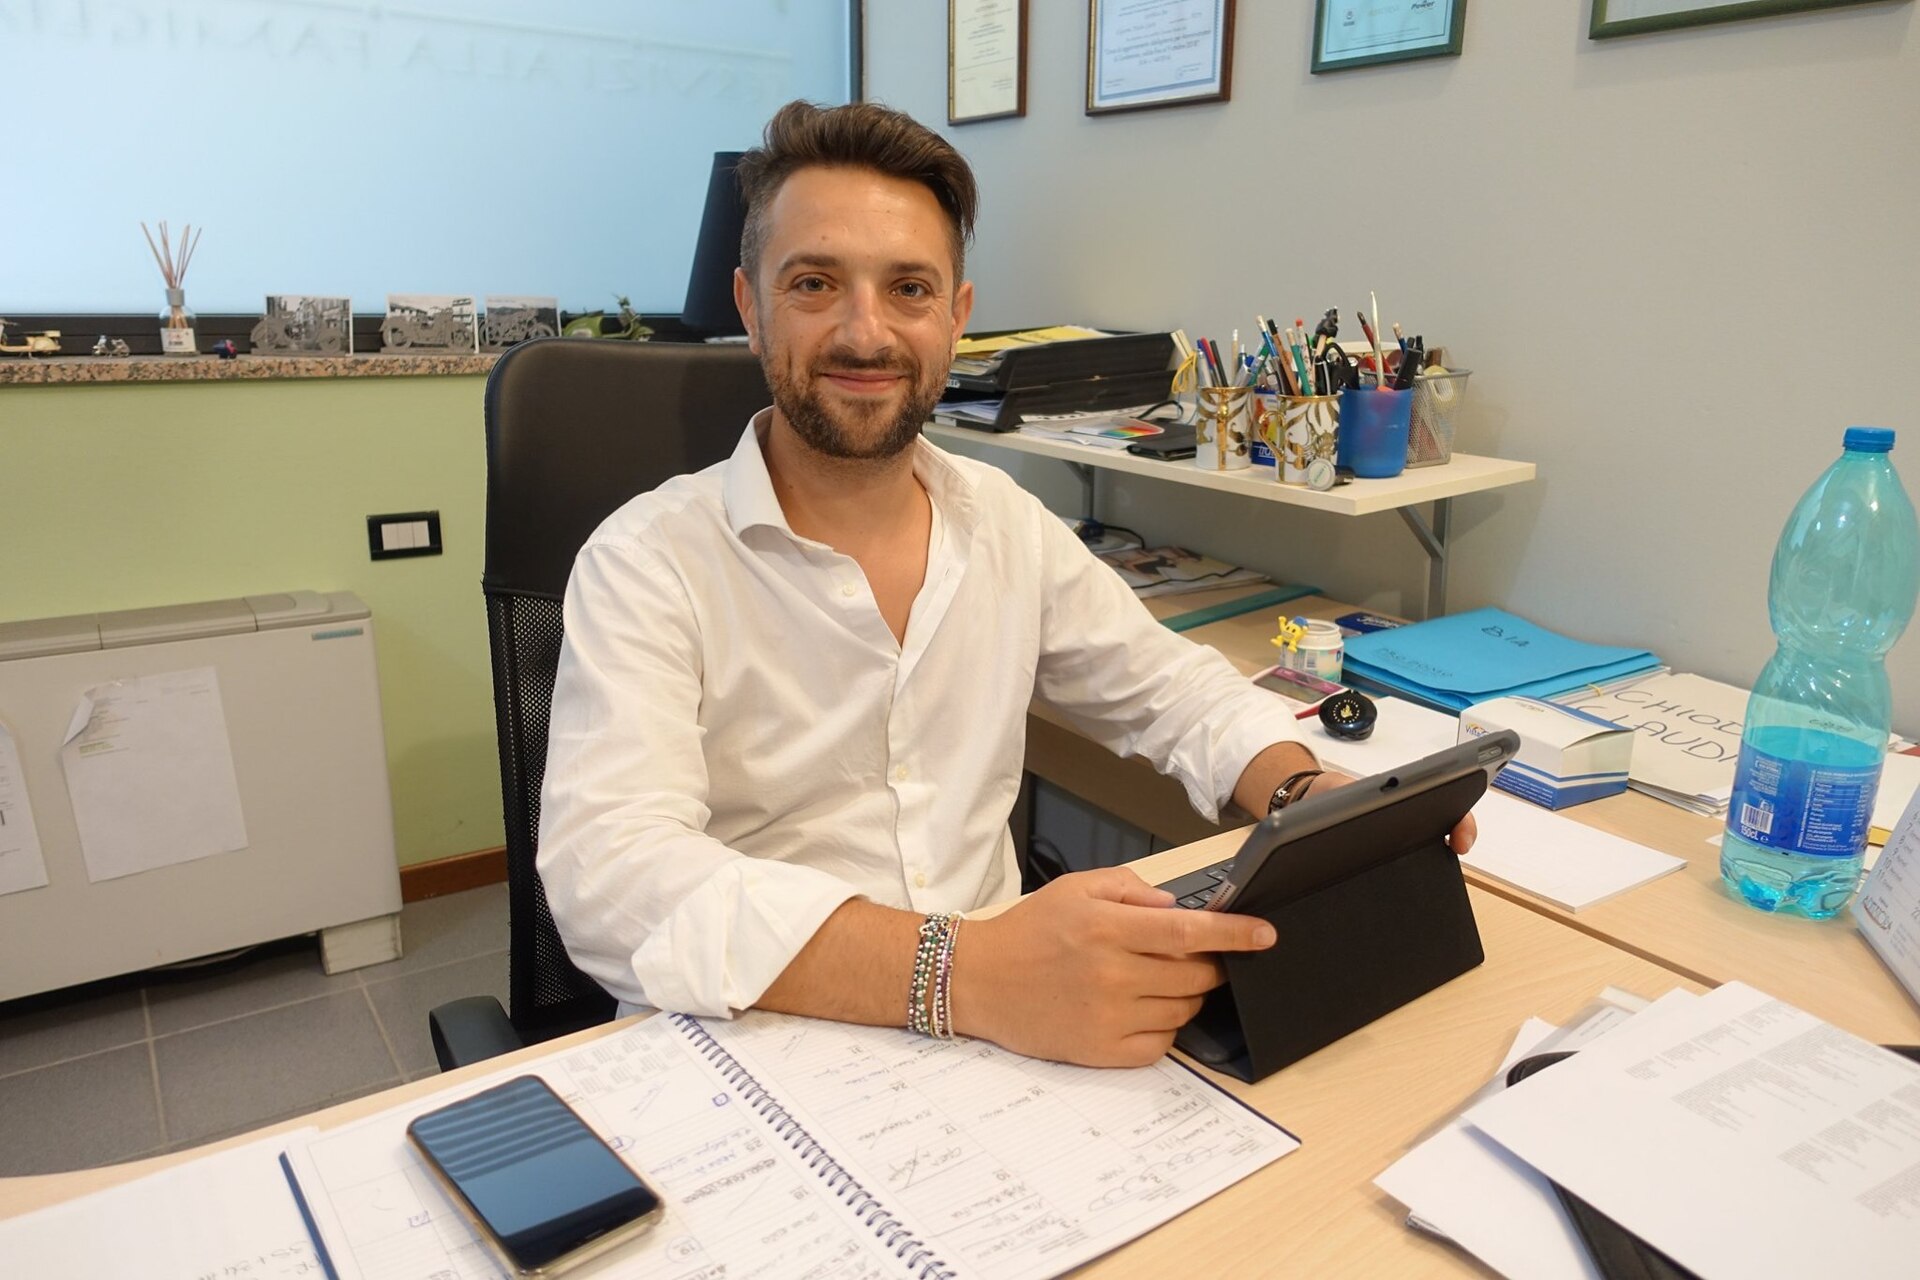 Paolo Lutti: Servizio Protetto CEO 및 Prodomo Servizi CEO